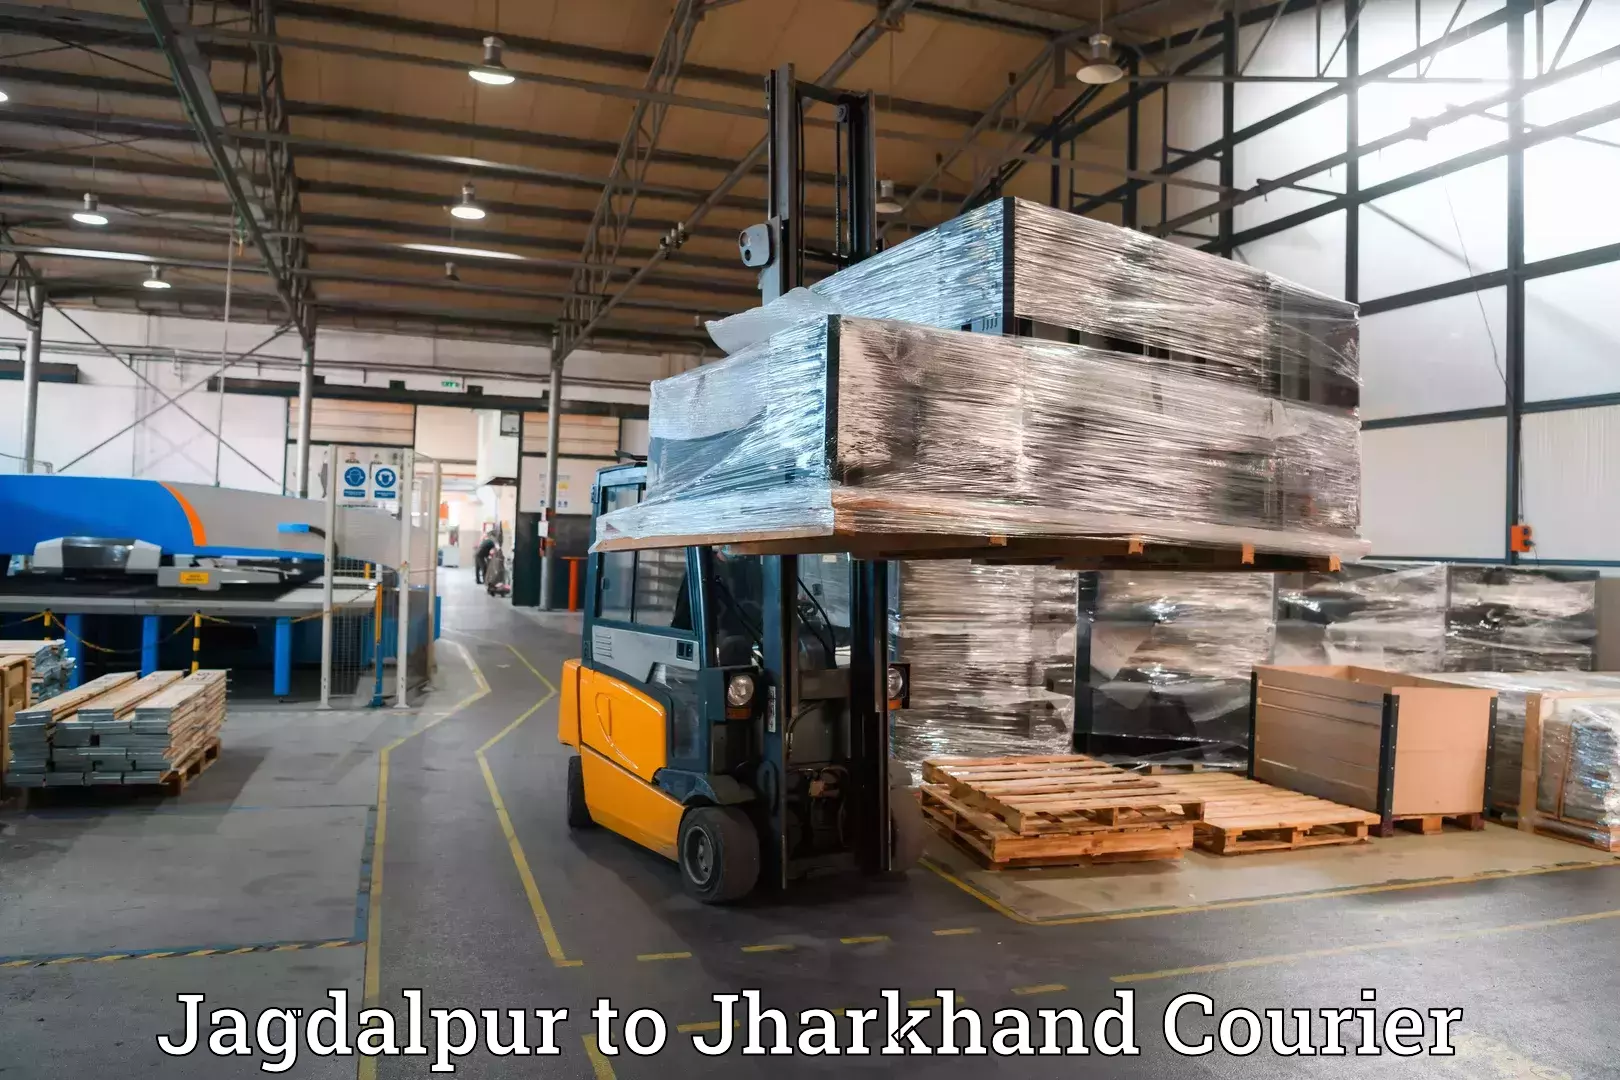 Baggage shipping experience Jagdalpur to Kedla